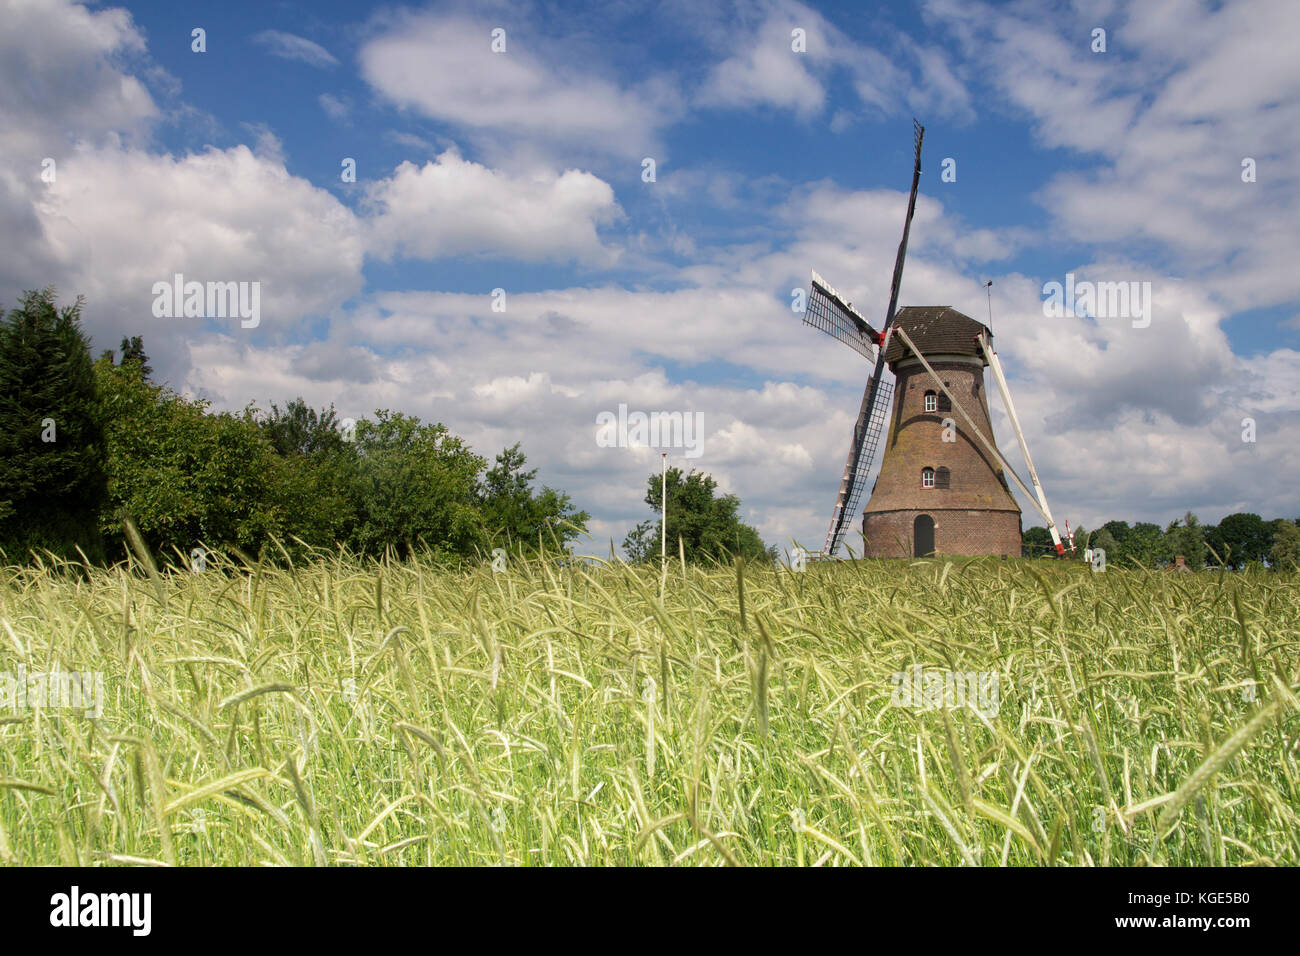 Windmill the Piepermolen Stock Photo